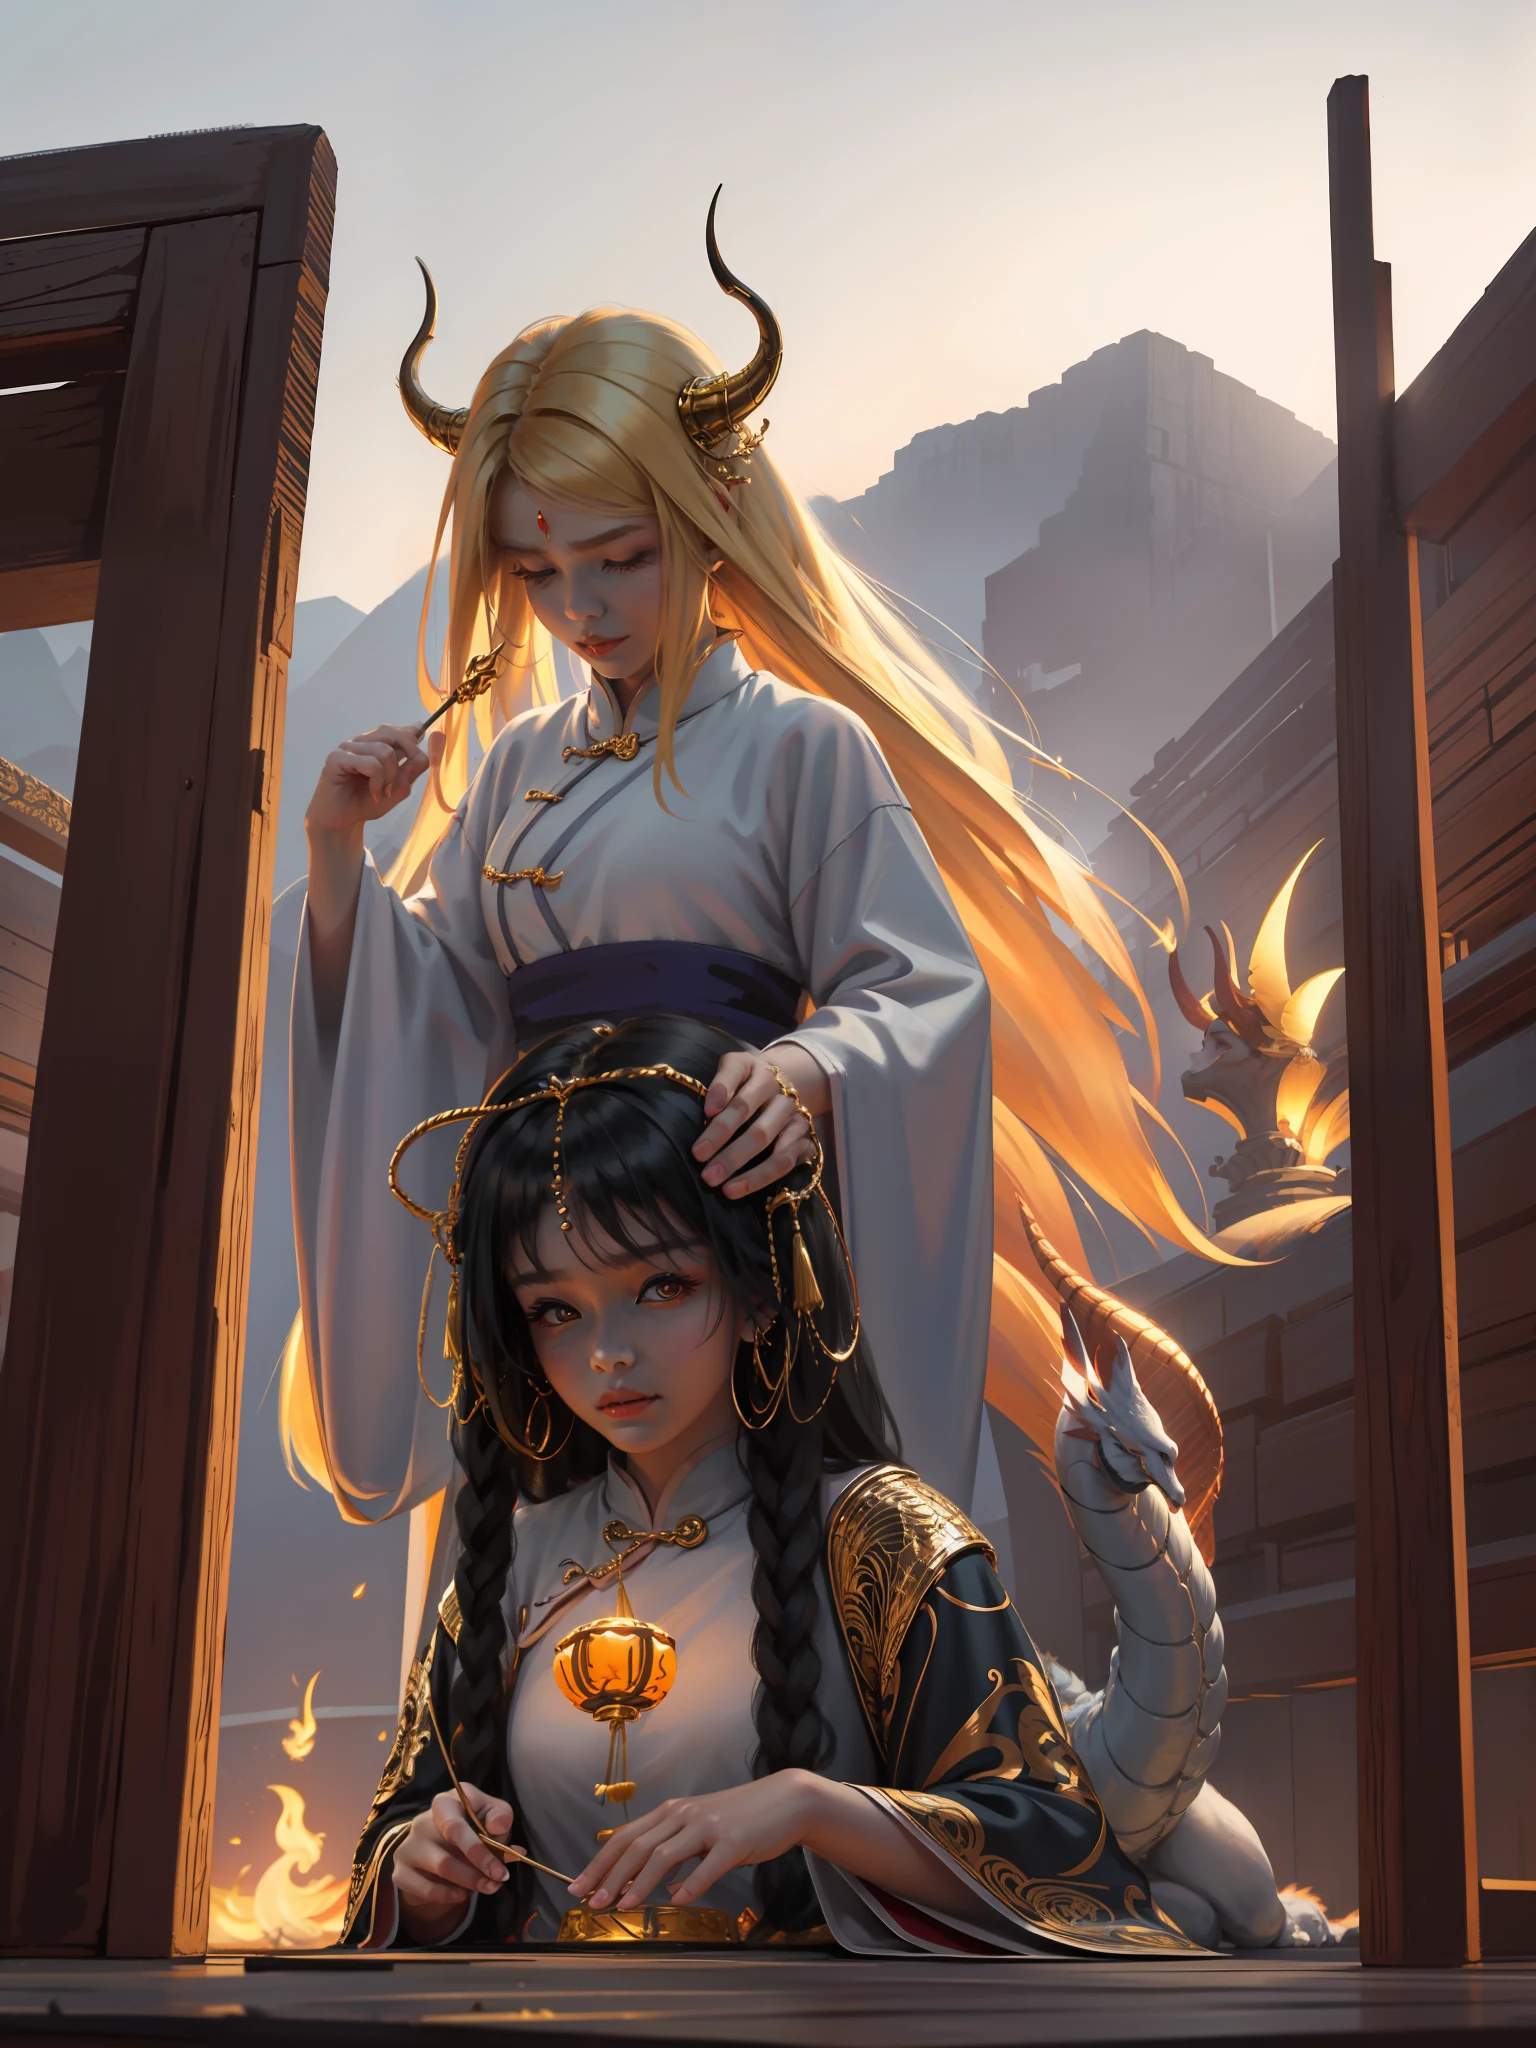 ultra transparente, Bien, un dragón chino rodea a la niña, la niña cruza para lanzar hechizos, la niña tiene cuernos de dragón y adornos dorados para el cabello en la cabeza, Ropa Han, luz natural